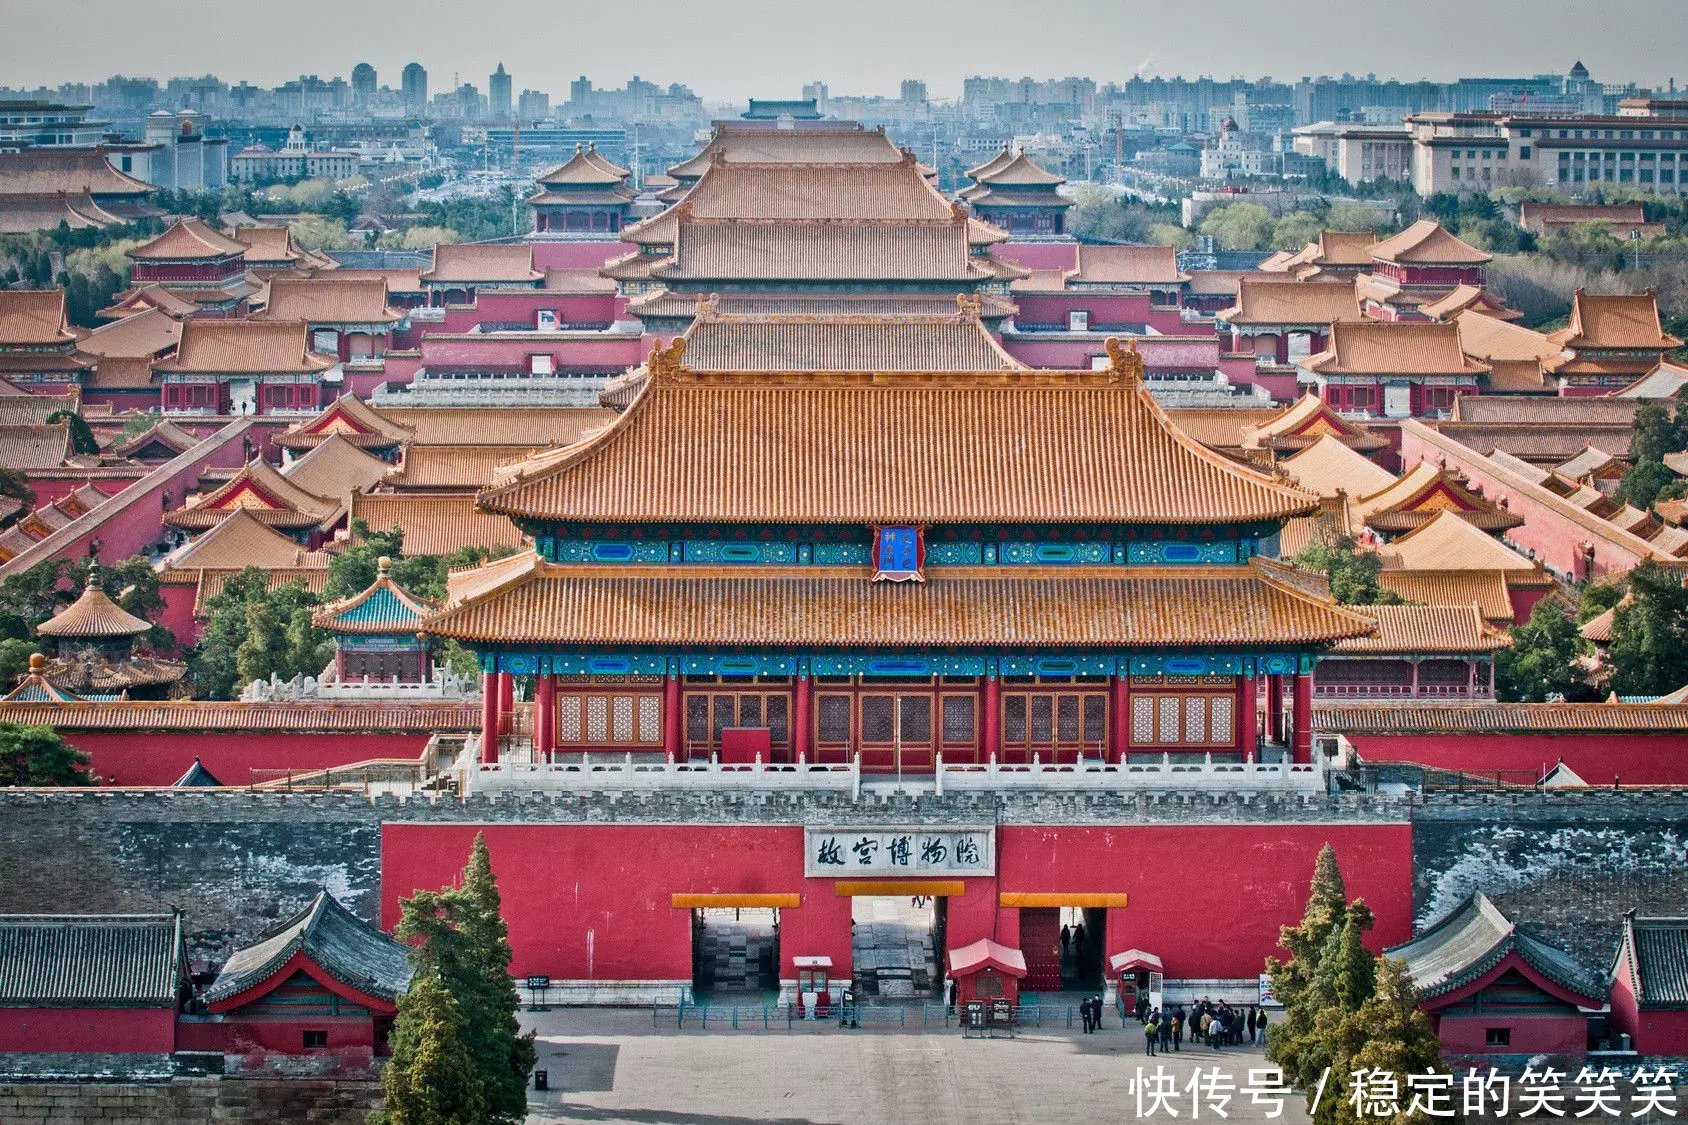 北京故宫是中国明清两代的皇家宫殿,旧称为紫禁城,是中国古代宫廷建筑